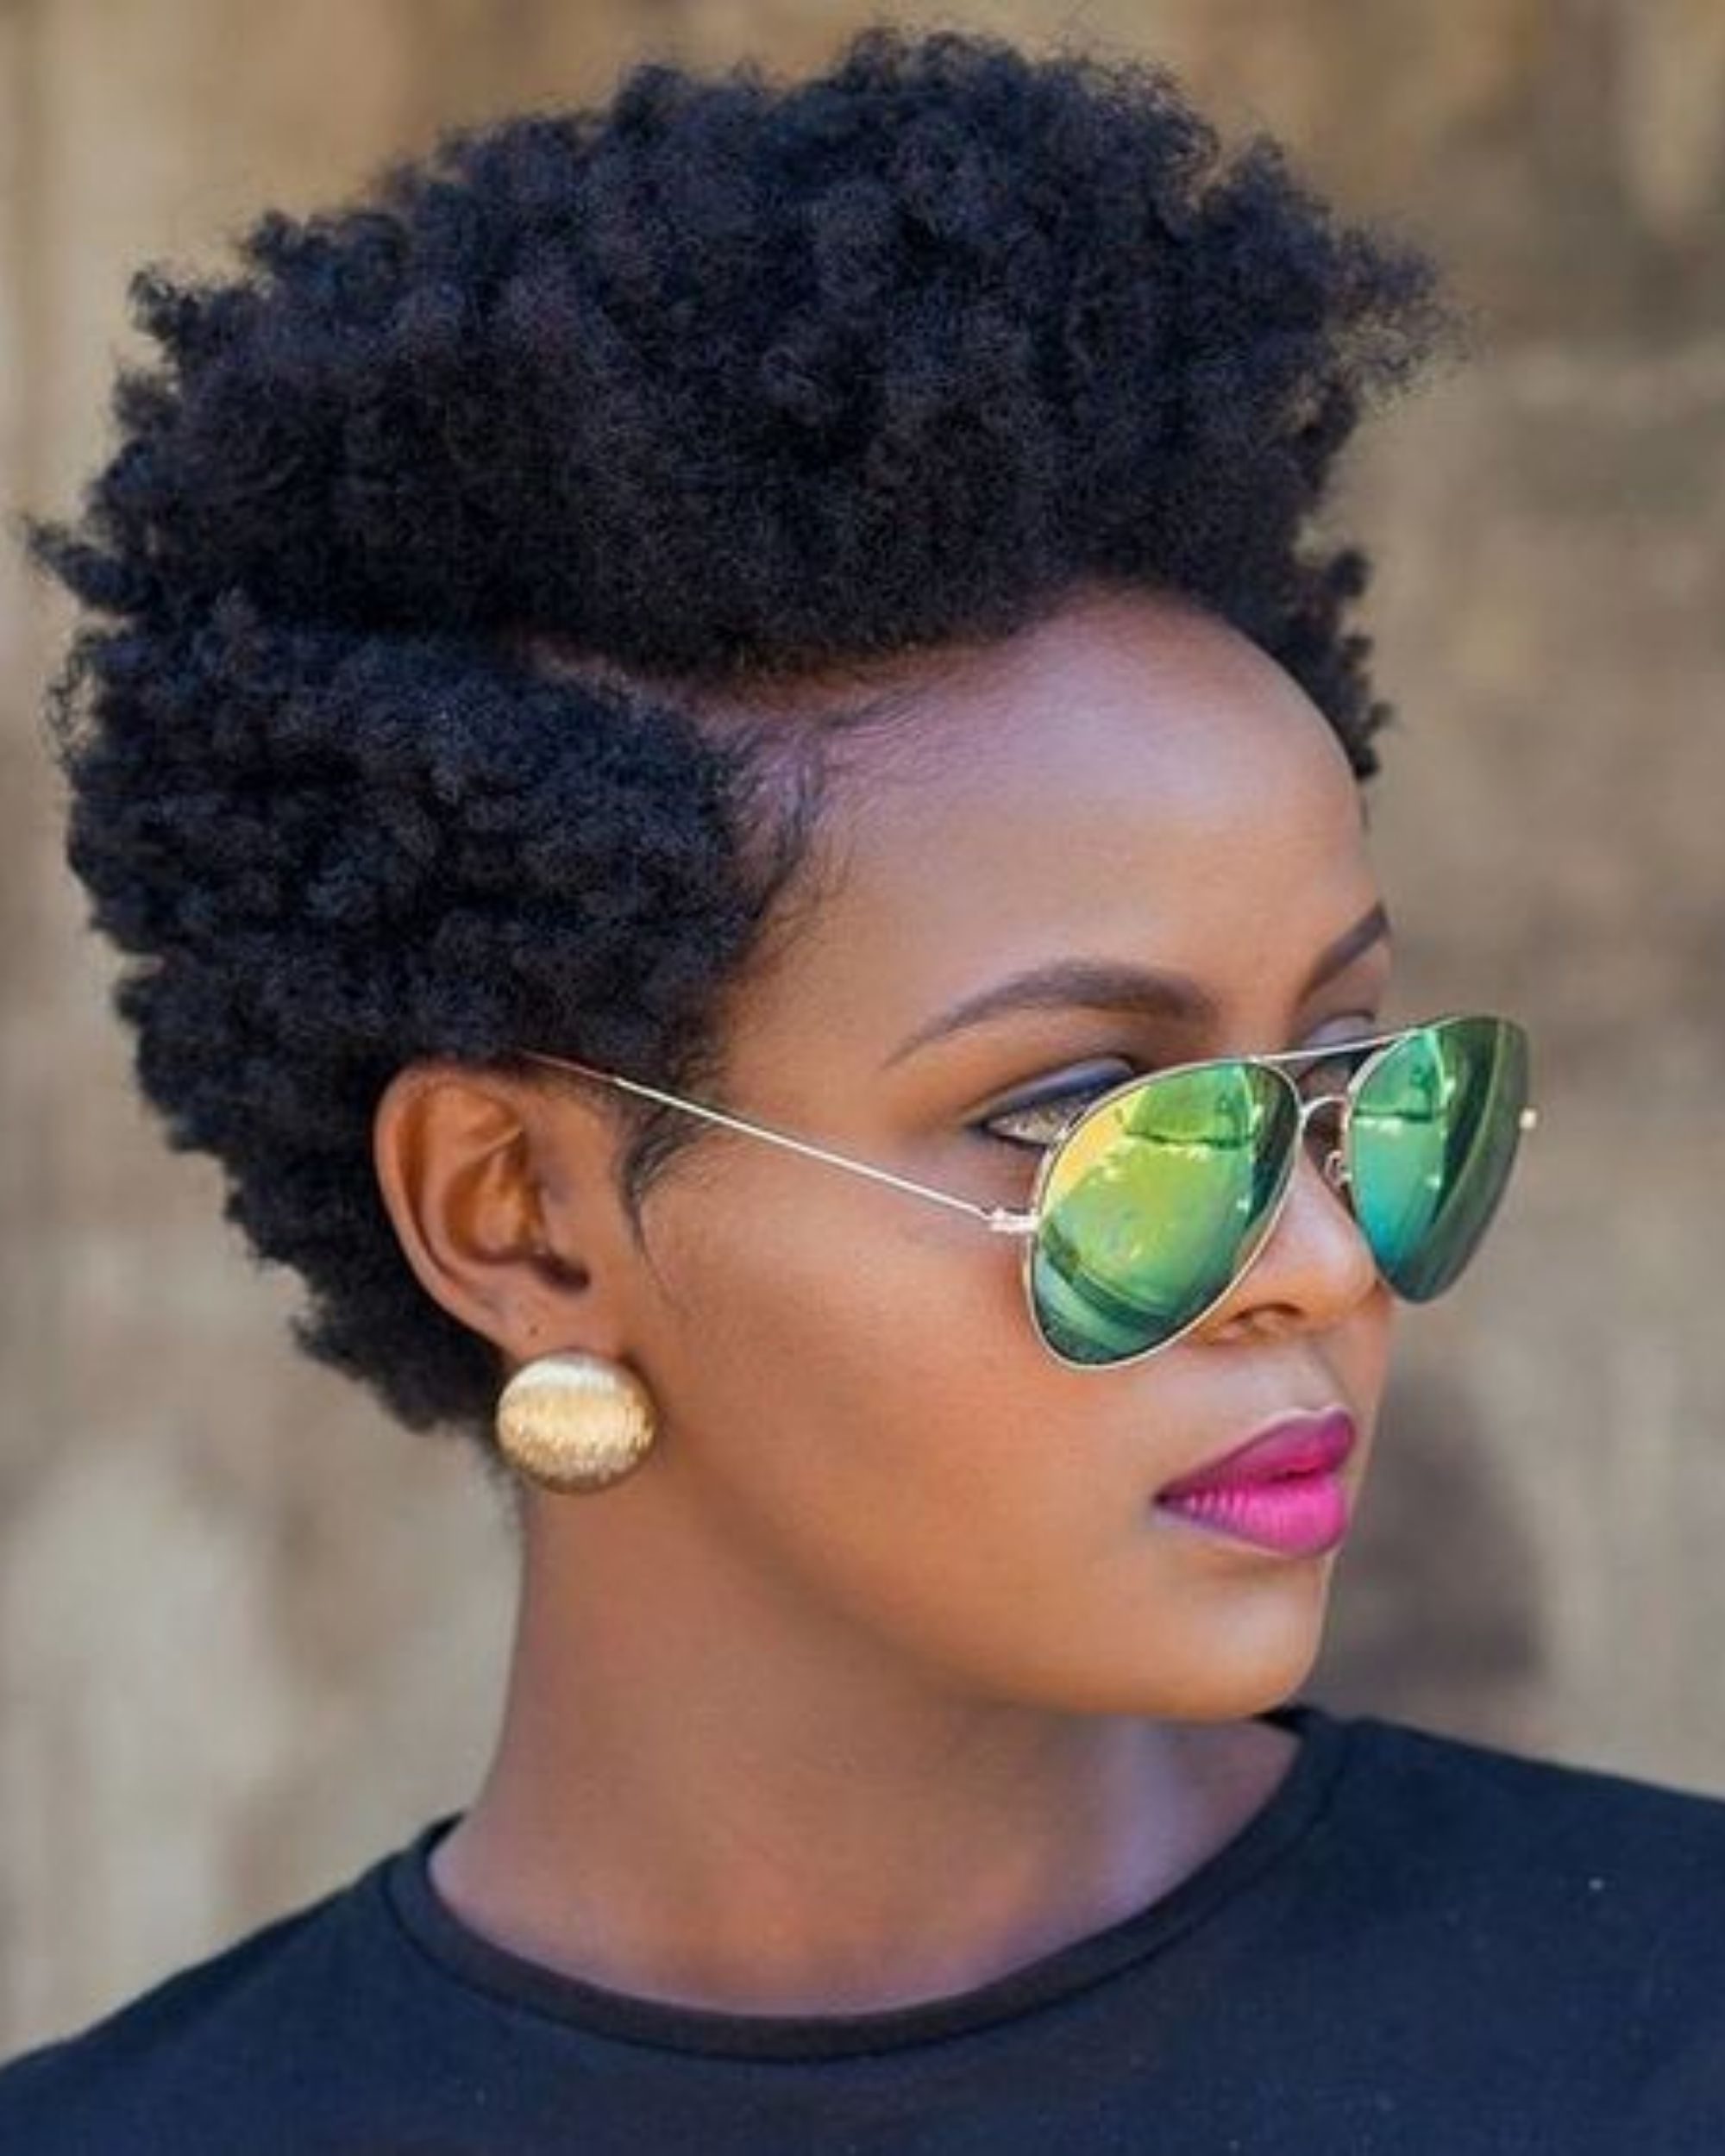 wartungsarme kurze natürliche Haarschnitte für schwarze Frauen